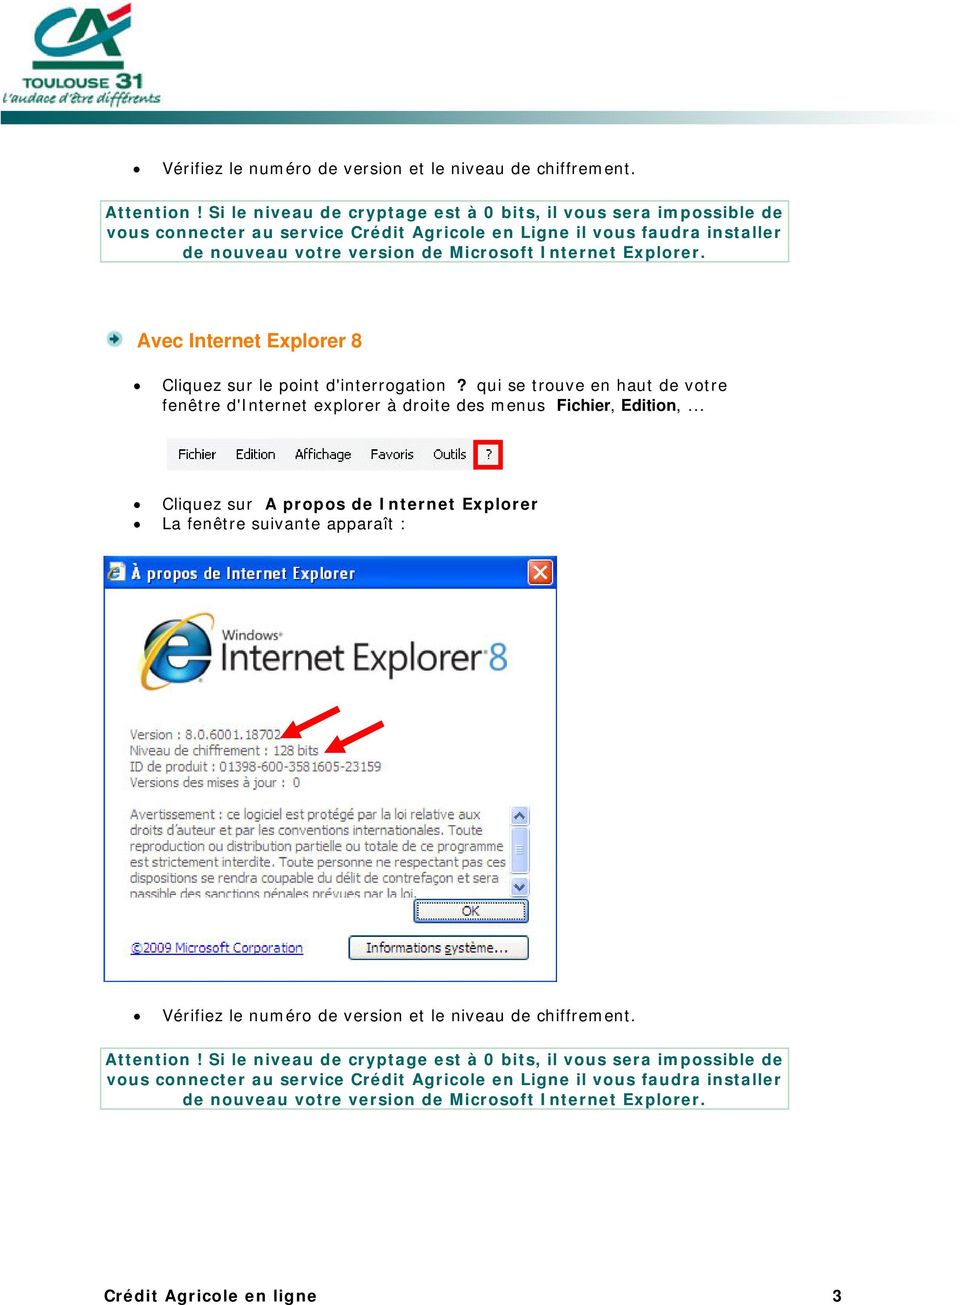 Avec Internet Explorer 8 Cliquez sur le point d'interrogation? qui se trouve en haut de votre fenêtre d'internet explorer à droite des menus Fichier, Edition,.